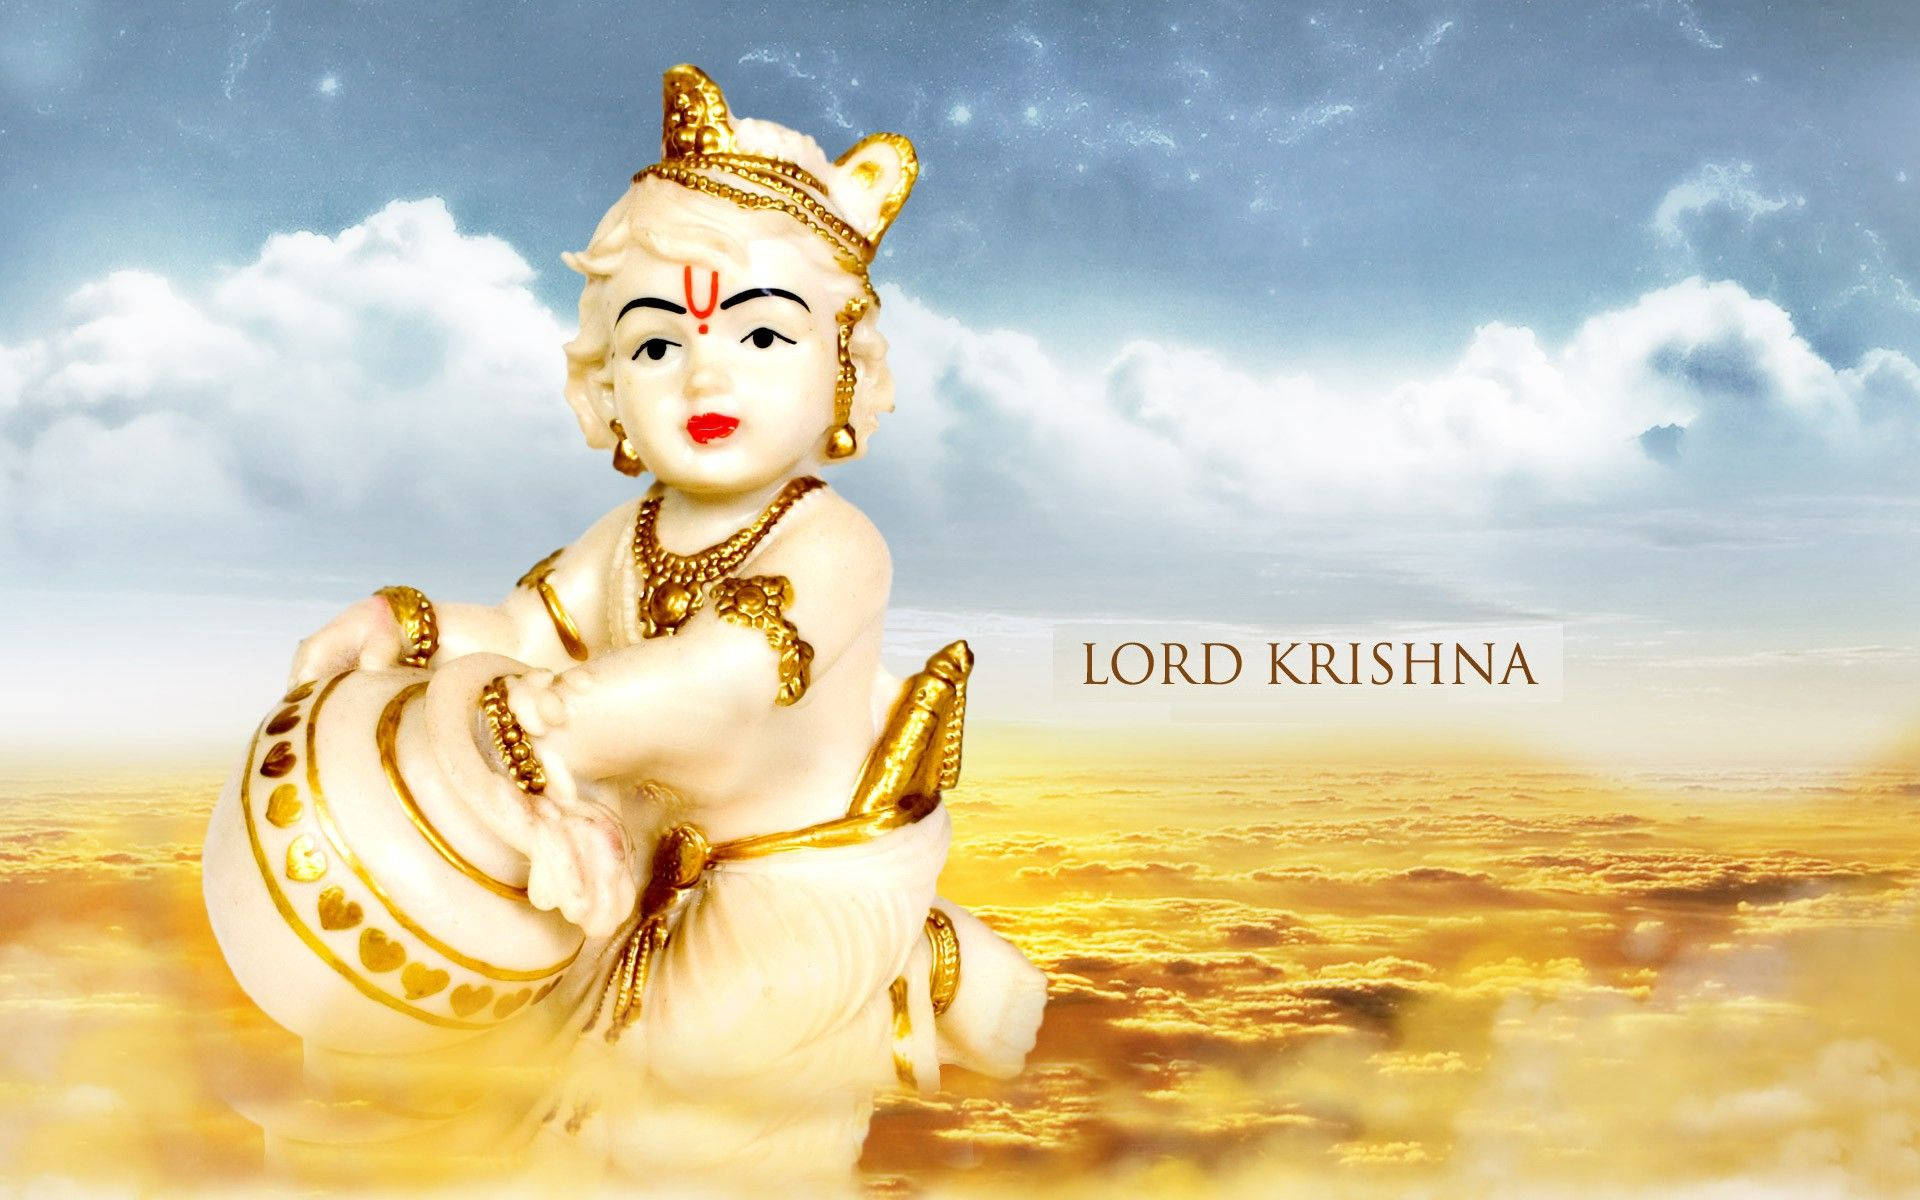 Bal Krishna Figurine Over Gold Clouds